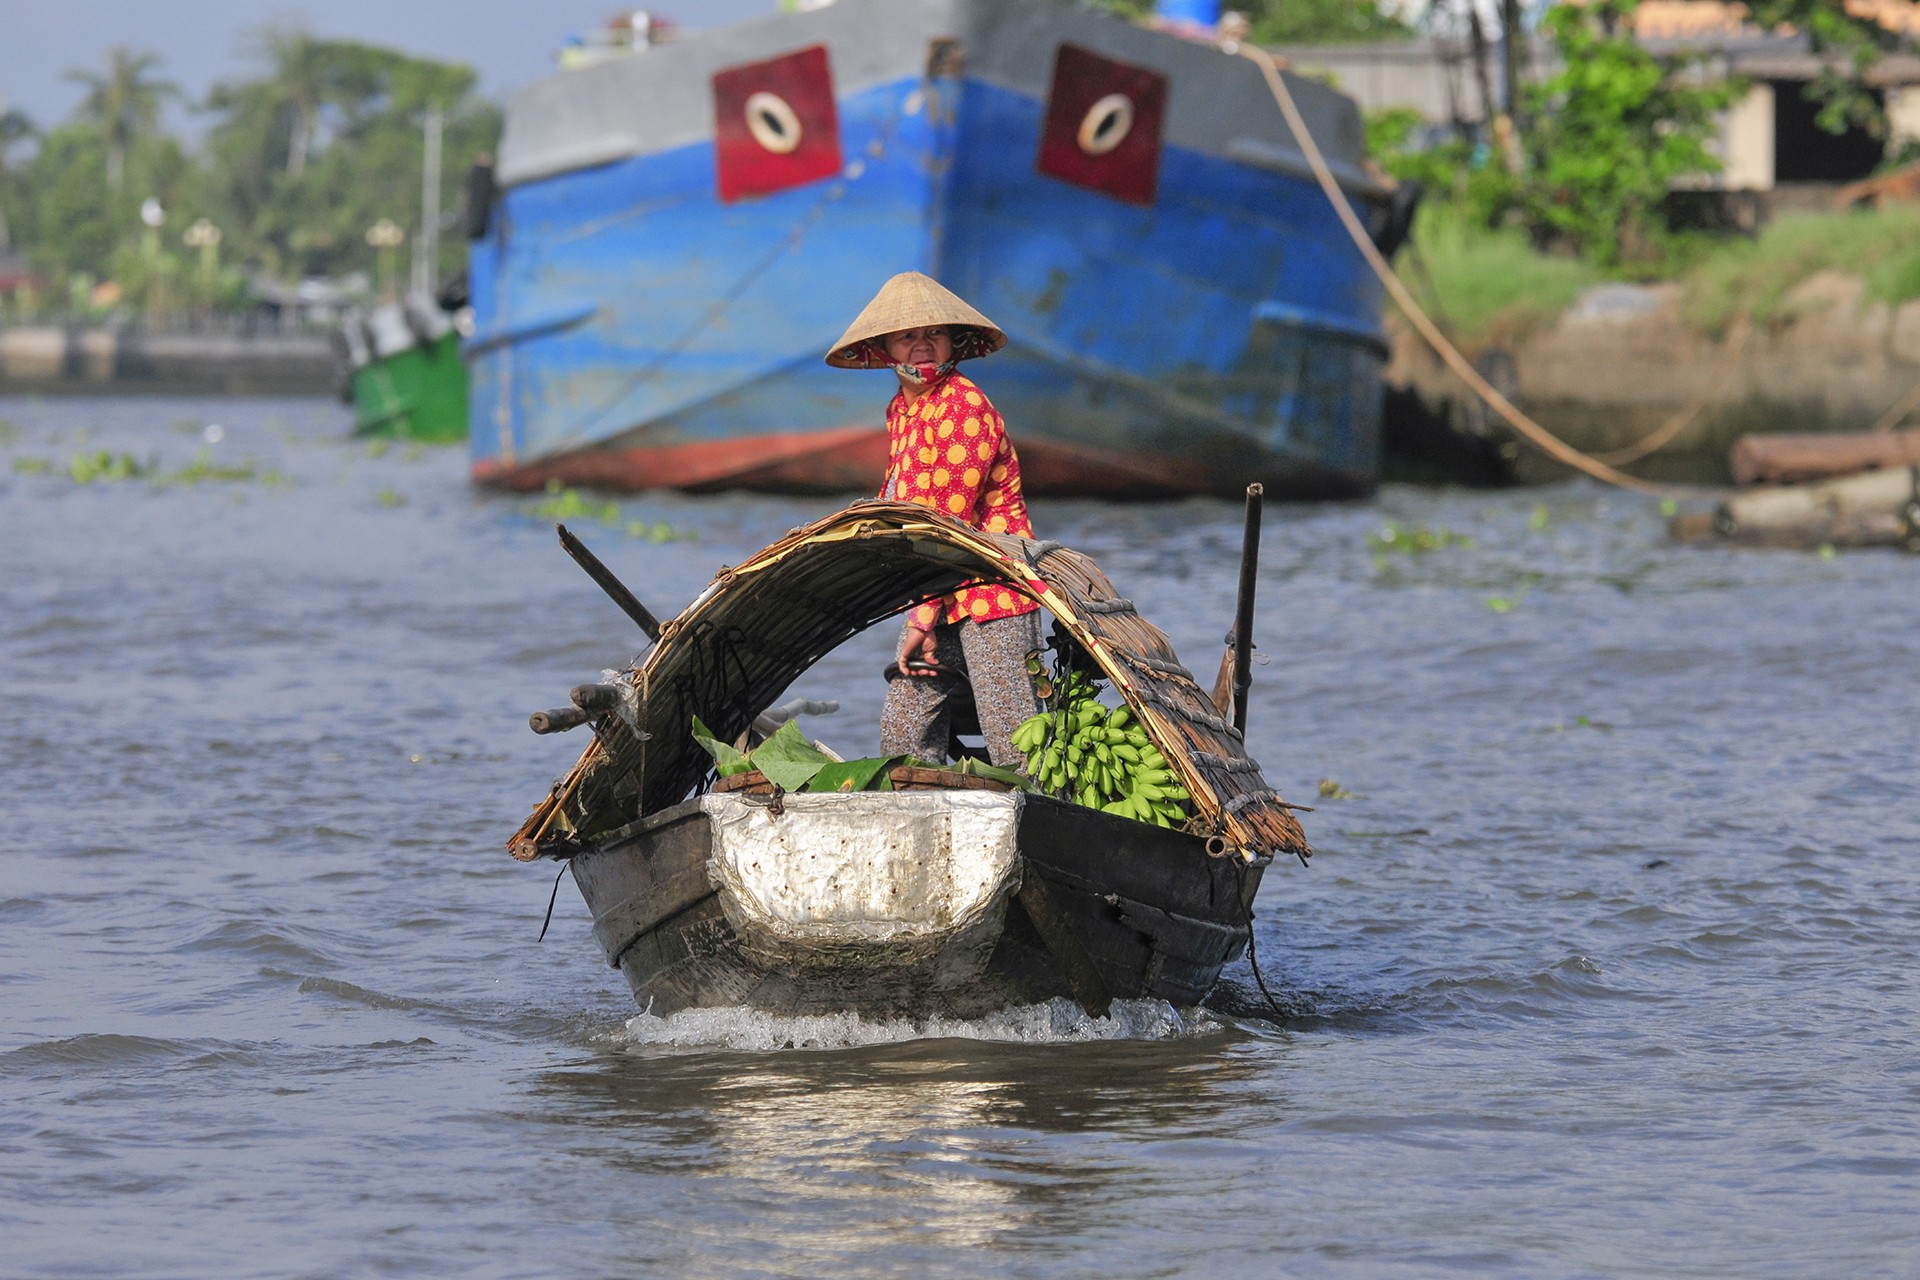 Les marchés flottants du mekong 2 